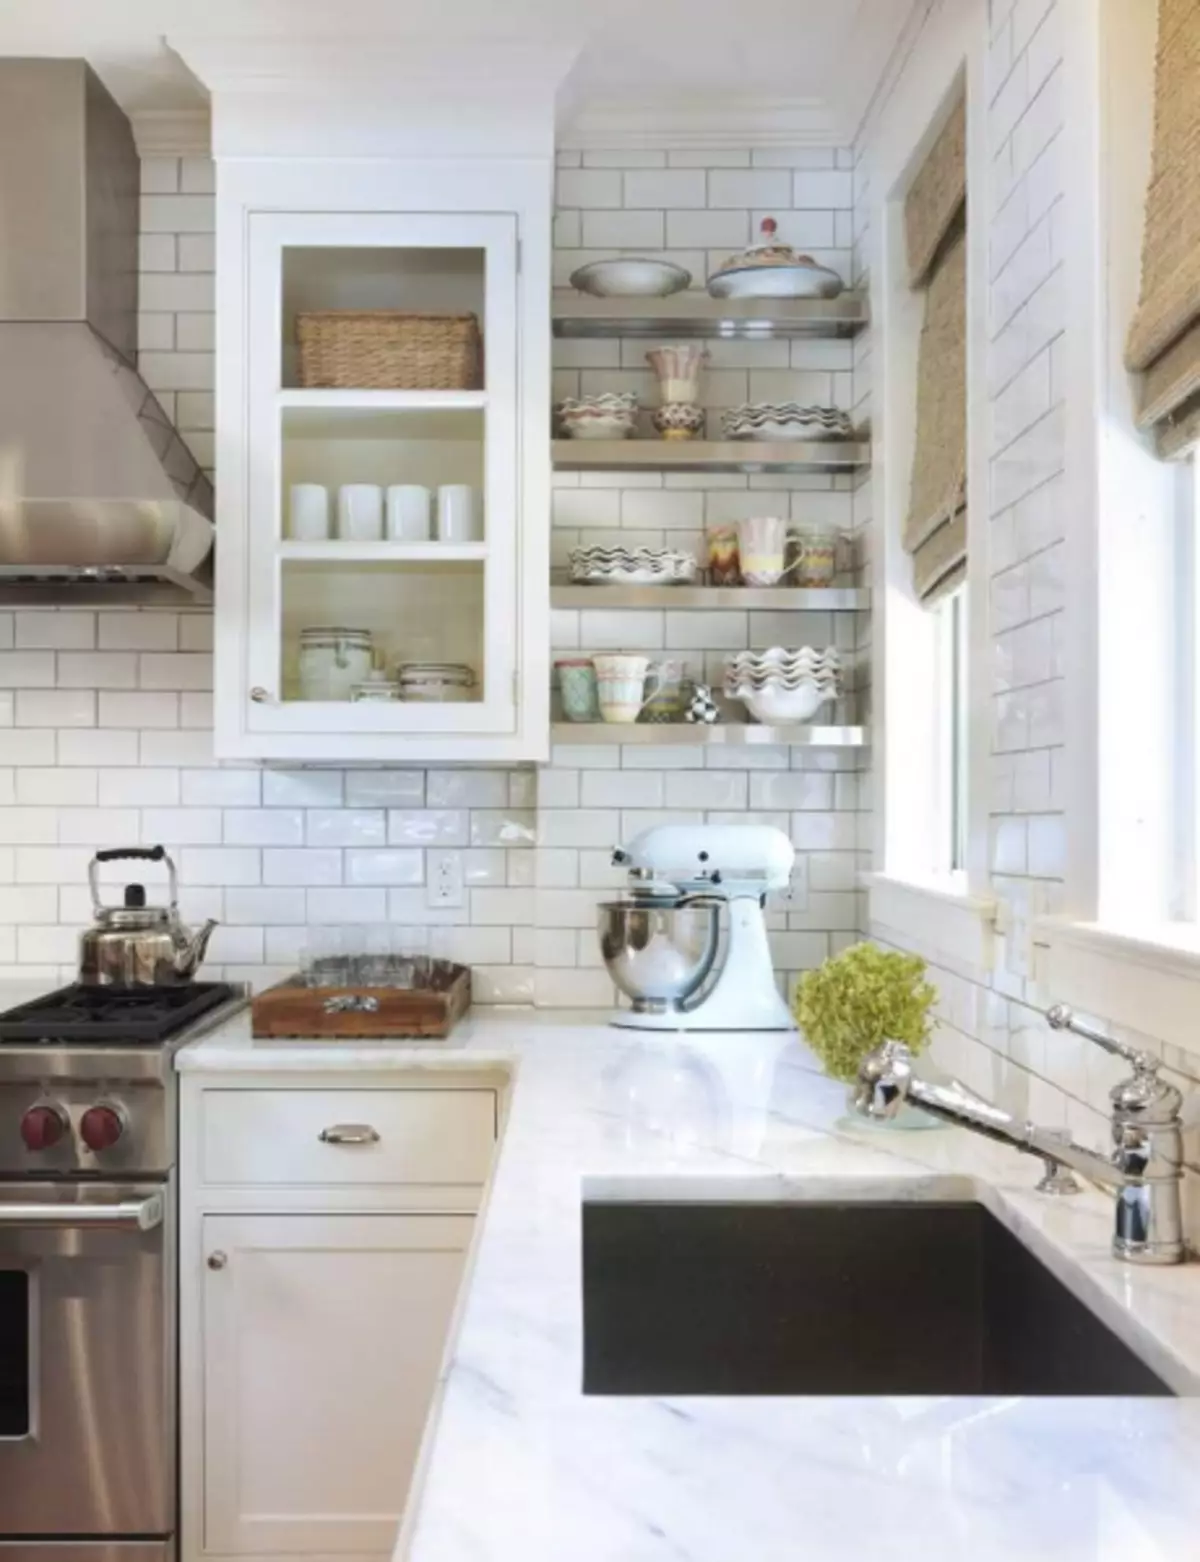 کاشی سفید برای آشپزخانه: چه نگاه بهتر، تحت آجر، عکس از پیش بند، رنگ سفید سیاه و سفید، سرامیک براق، در فضای باز، کاشی، ویدئو